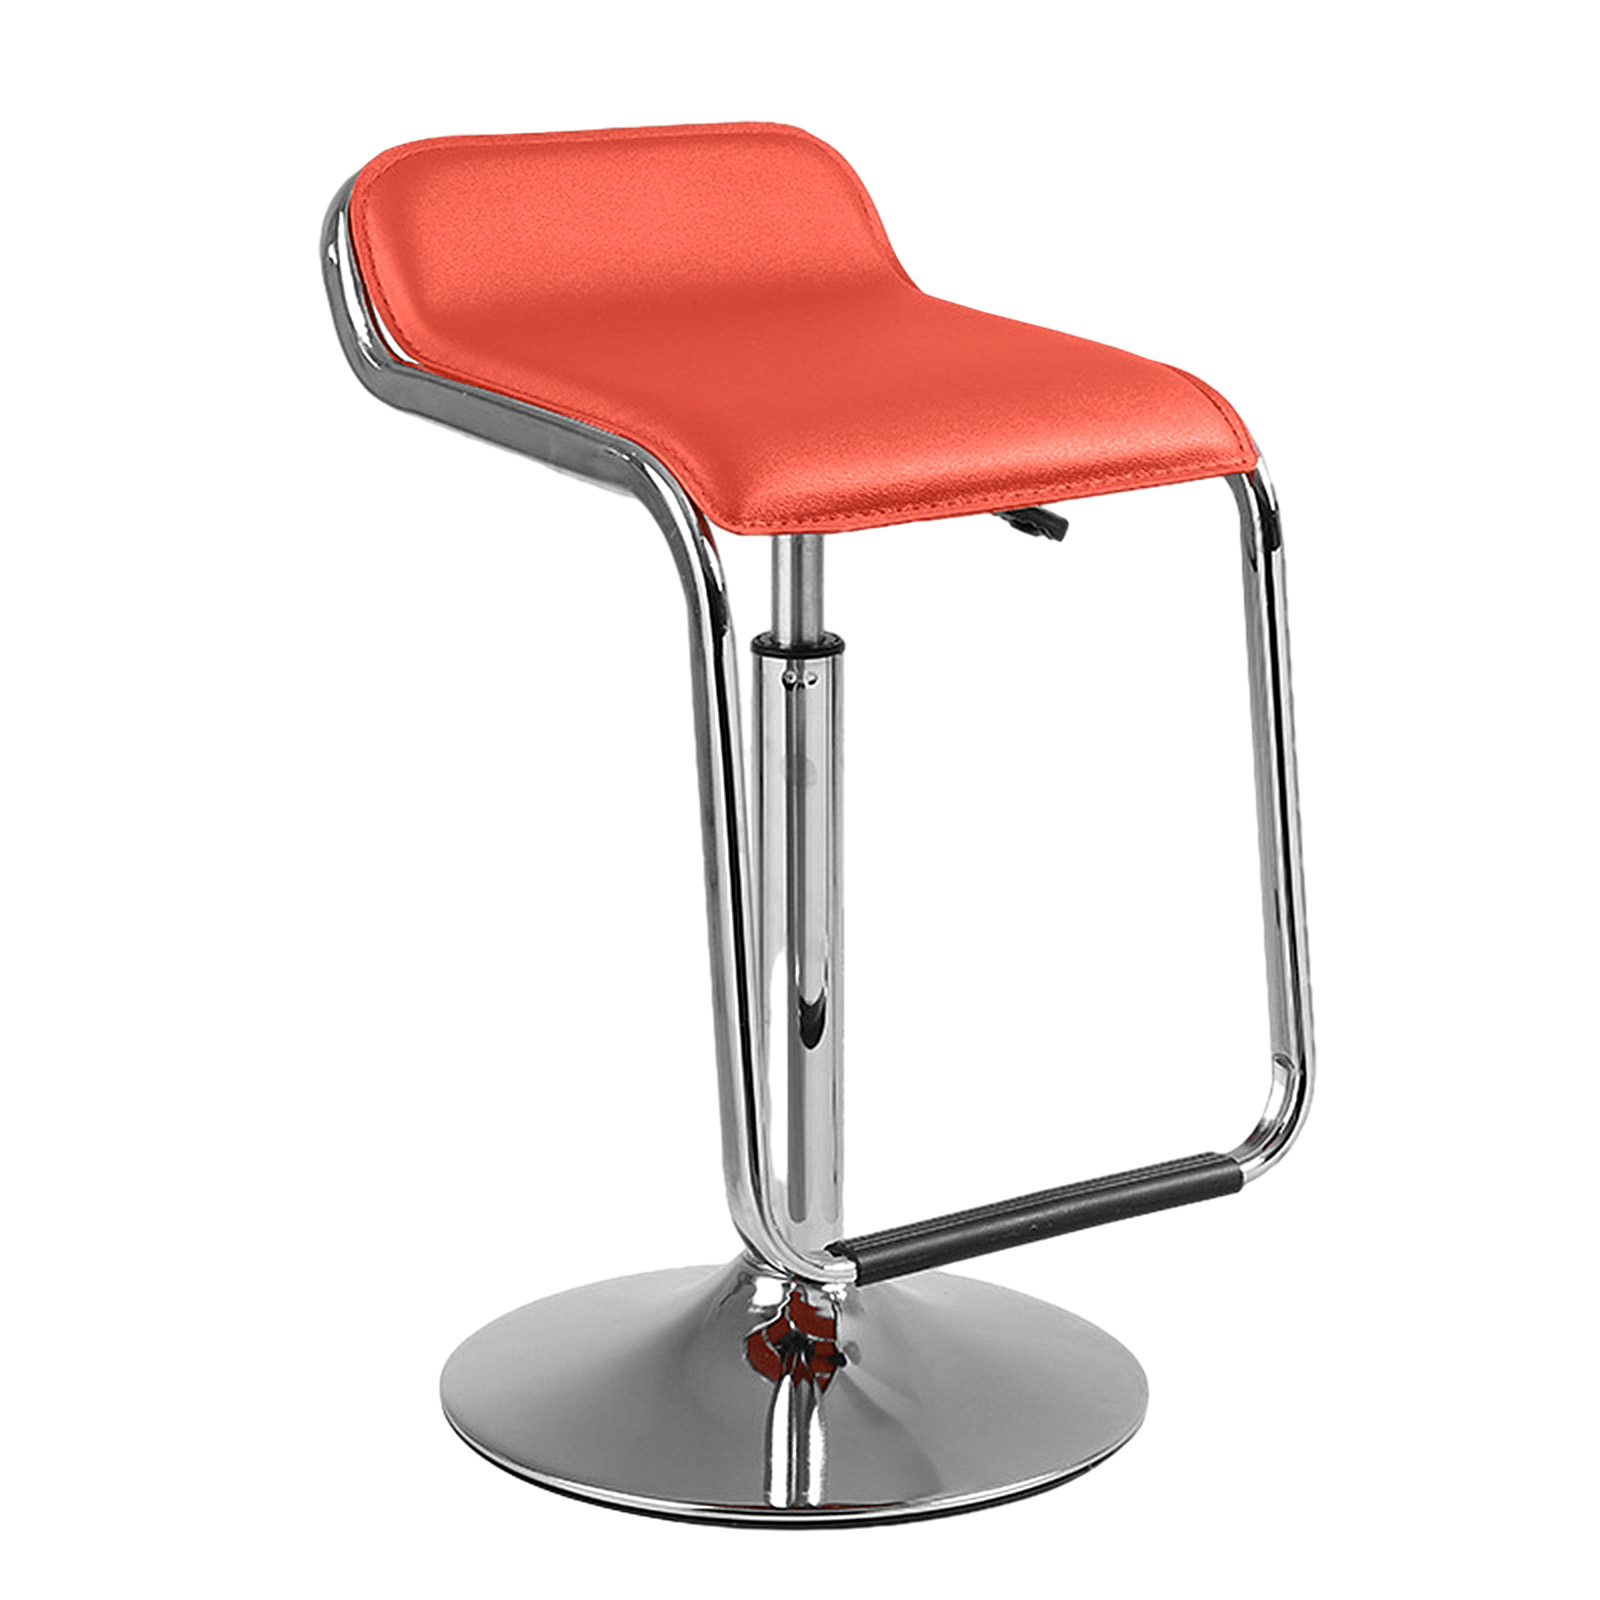 S chair round drag. - Orange